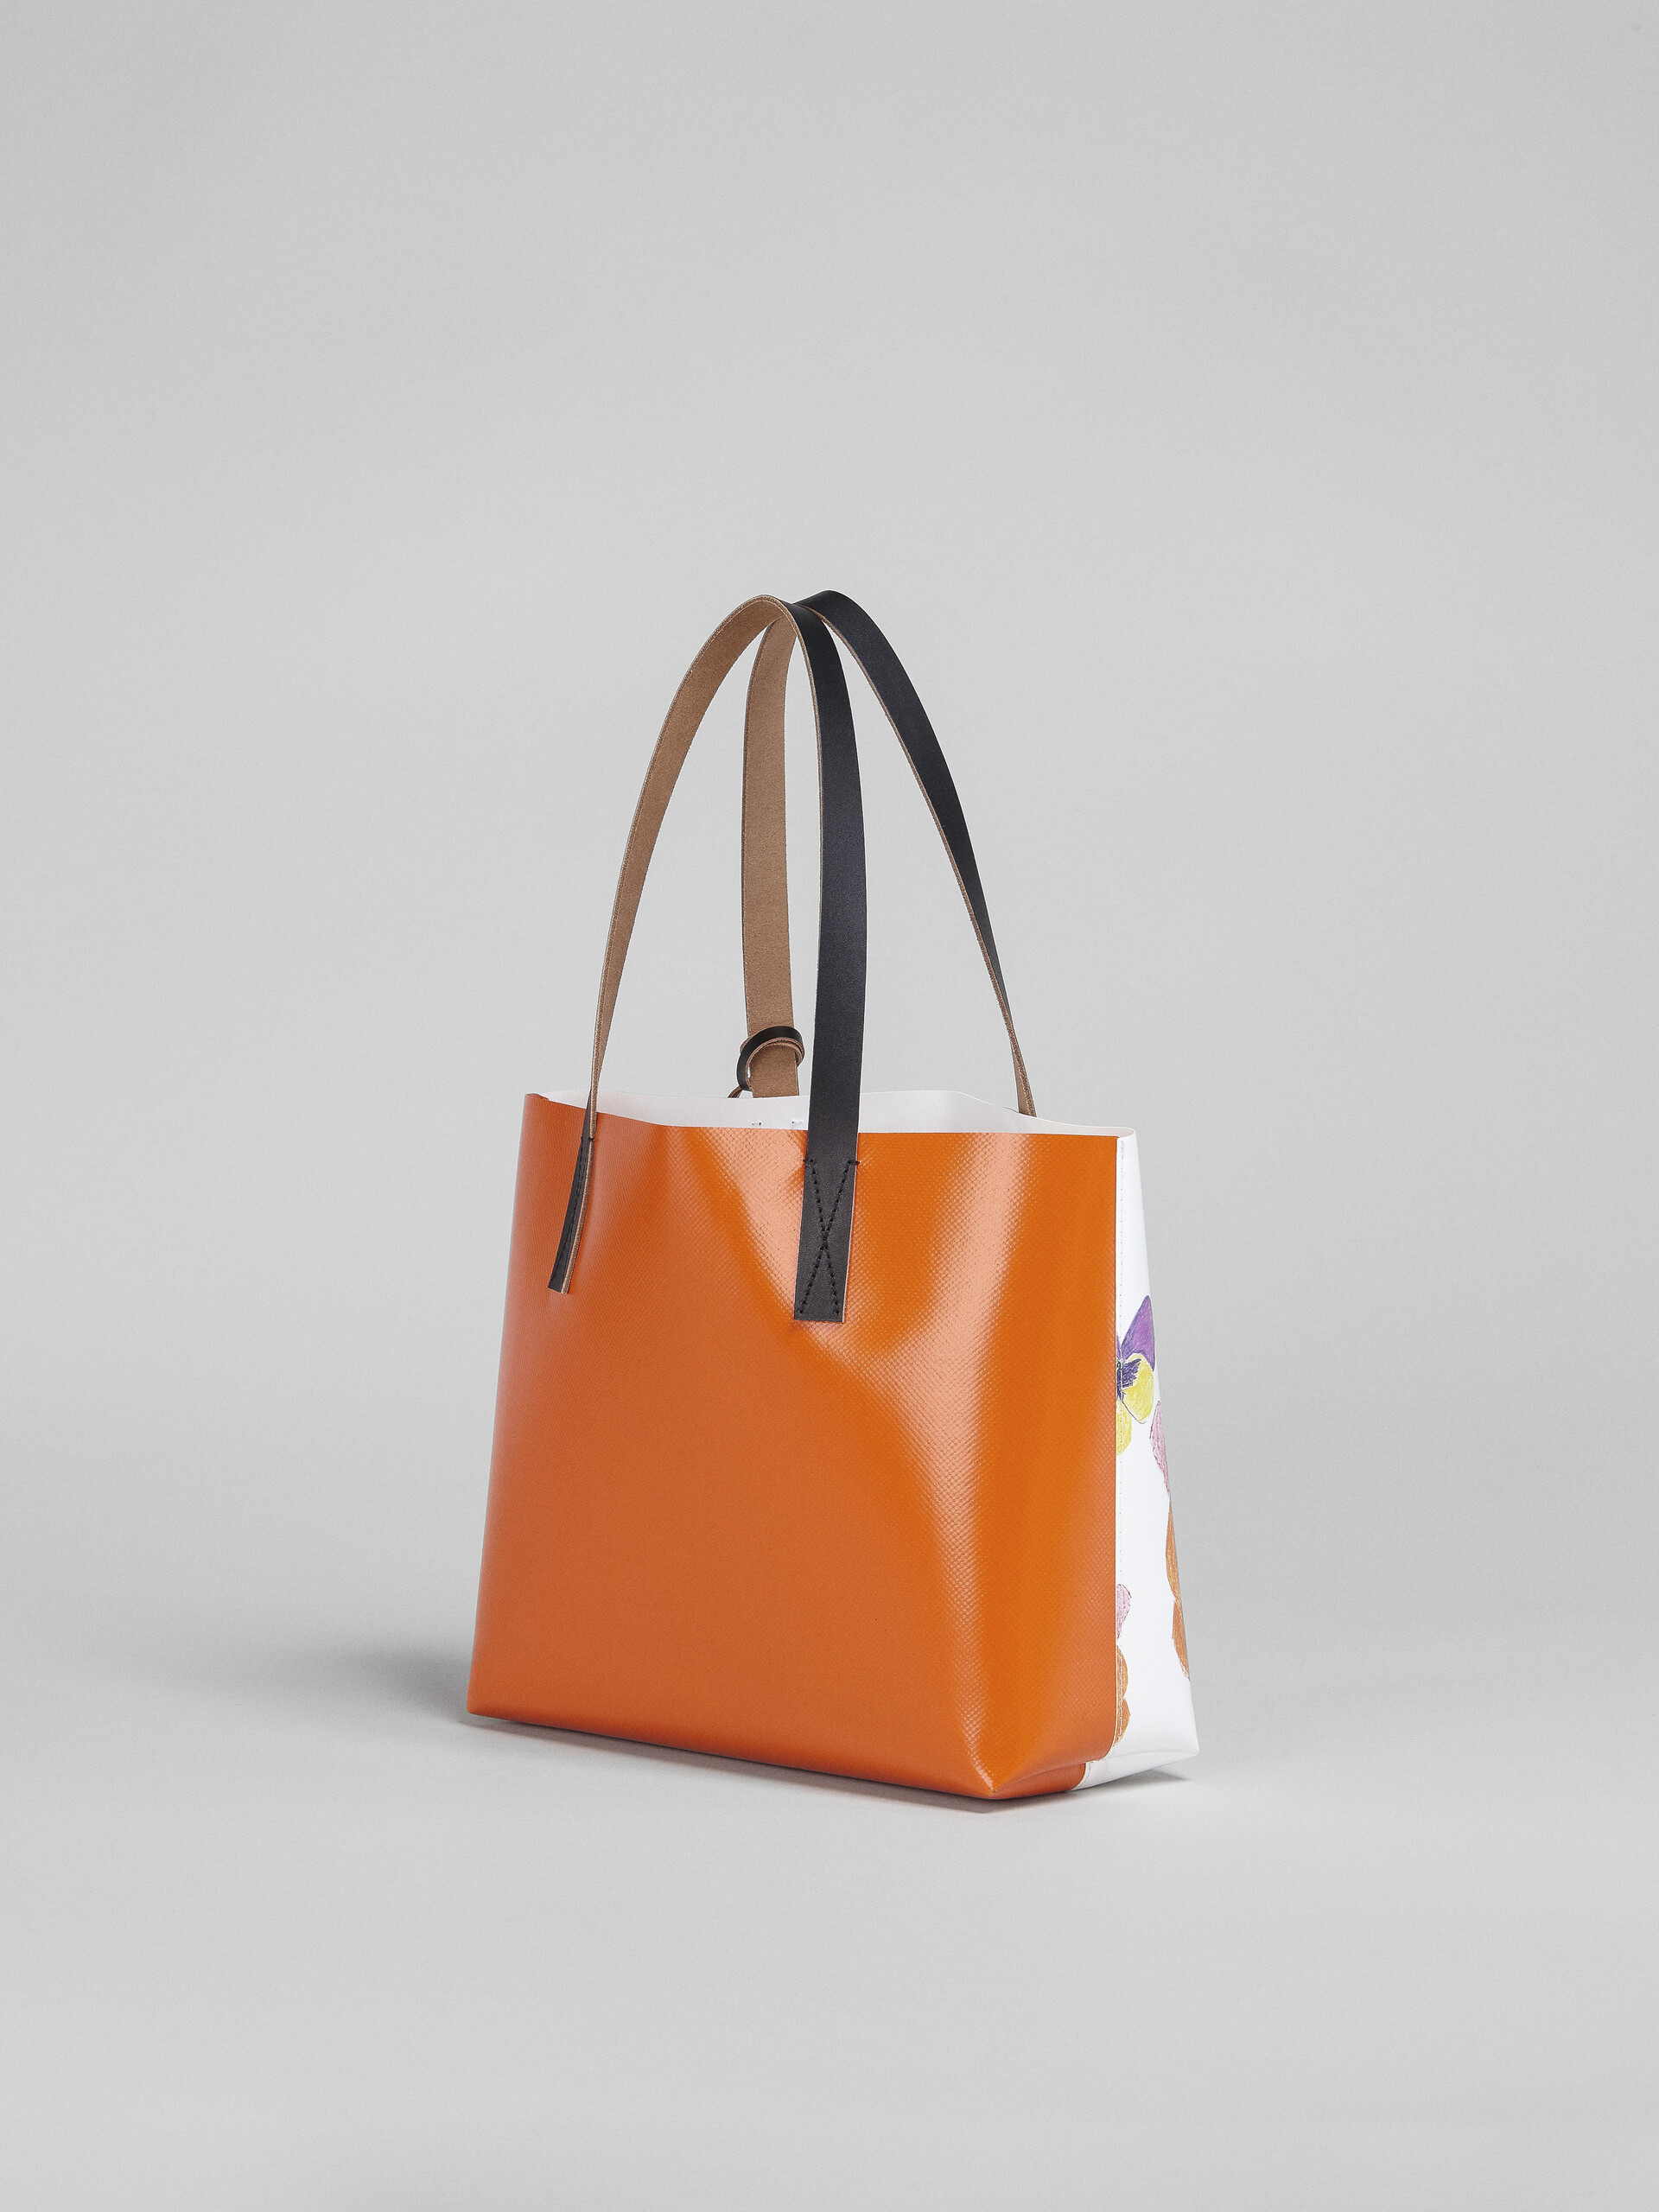 Pansies print orange shopping bag - Shopping Bags - Image 3